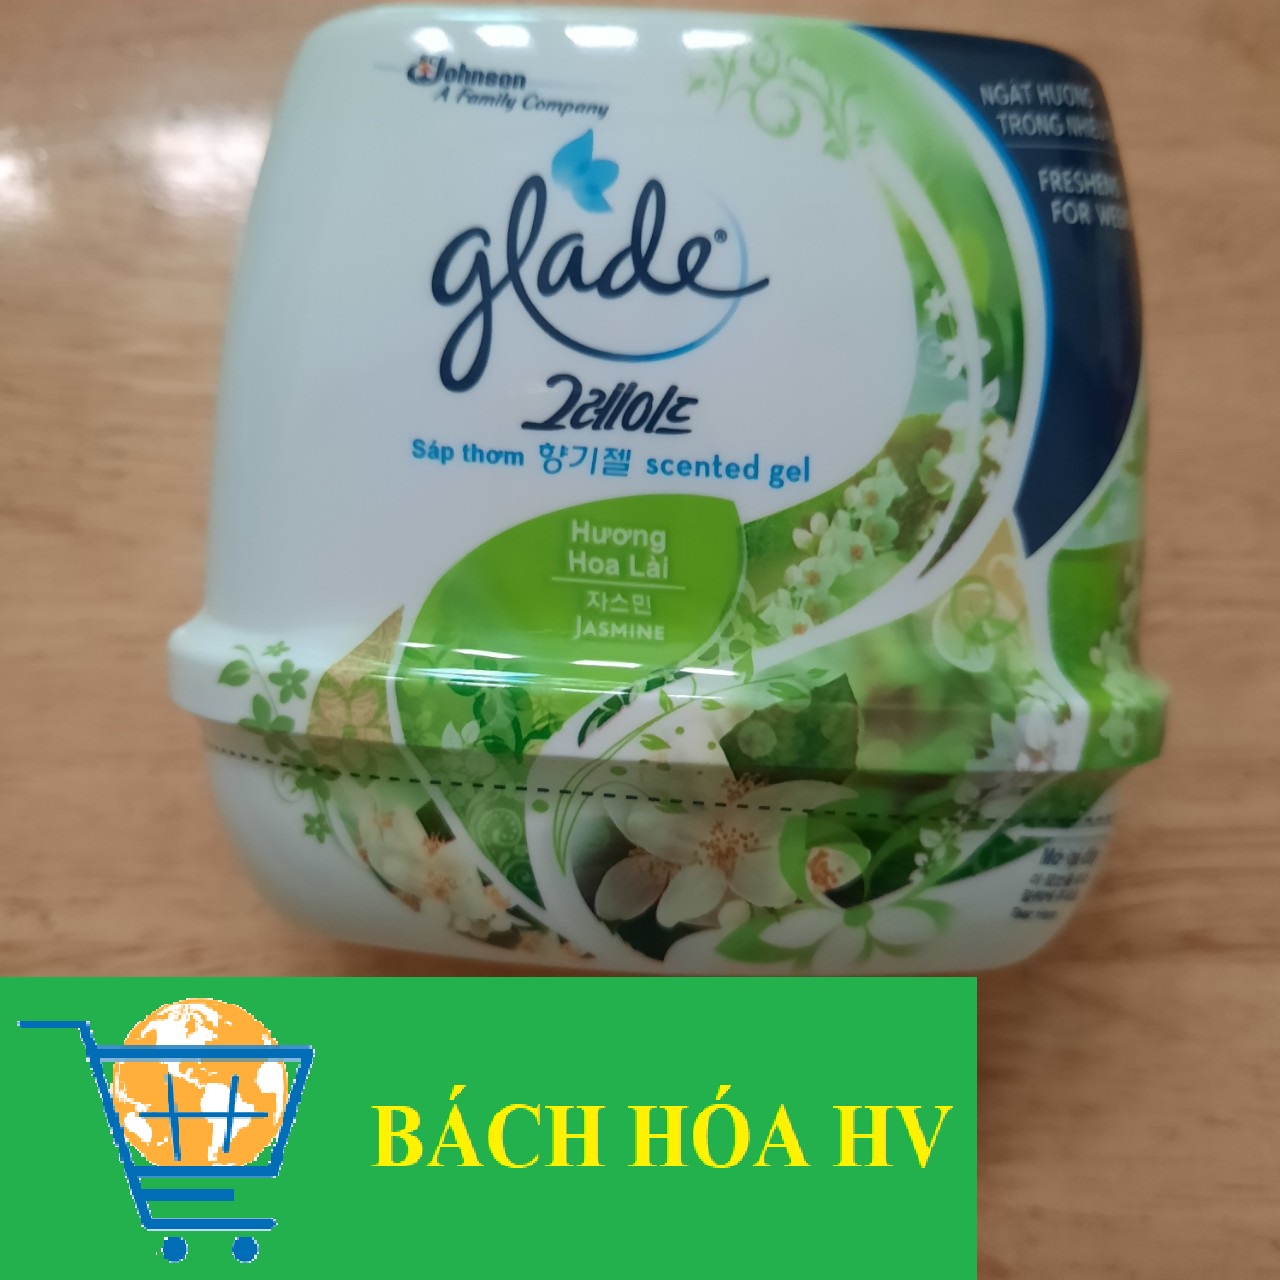 Sáp thơm Glade 180g (Hương Hoa Lài) - BACH HOA HV thumbnail